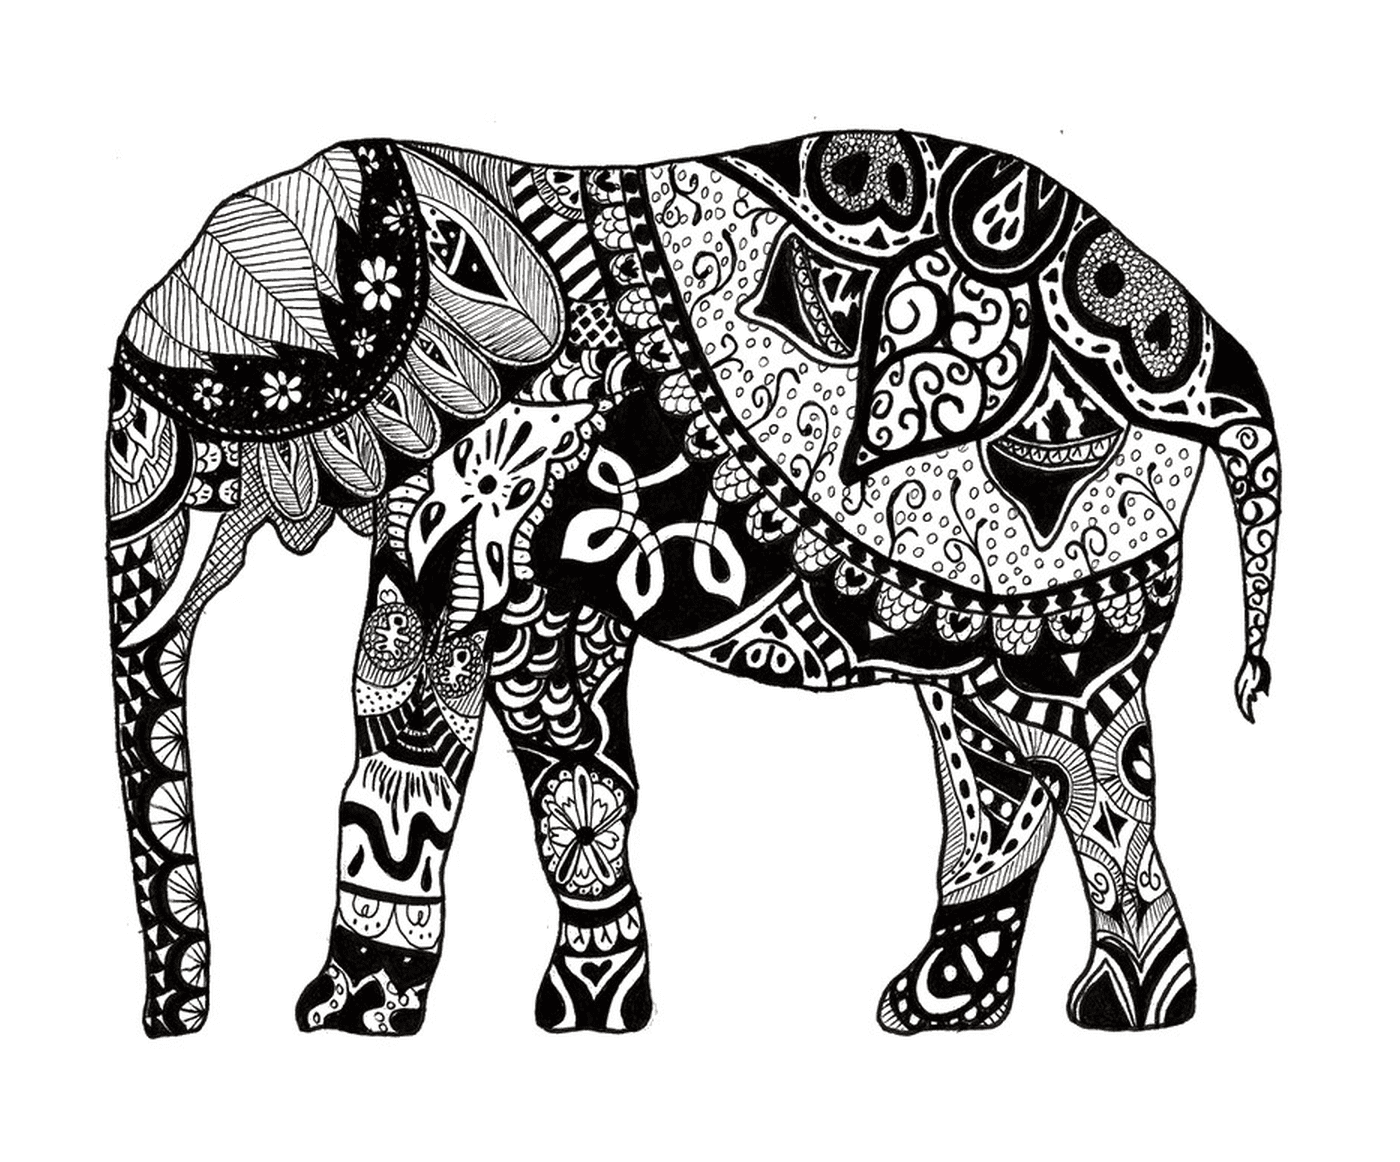  Ein Elefant mit vielen Mandalas auf seinem Körper 